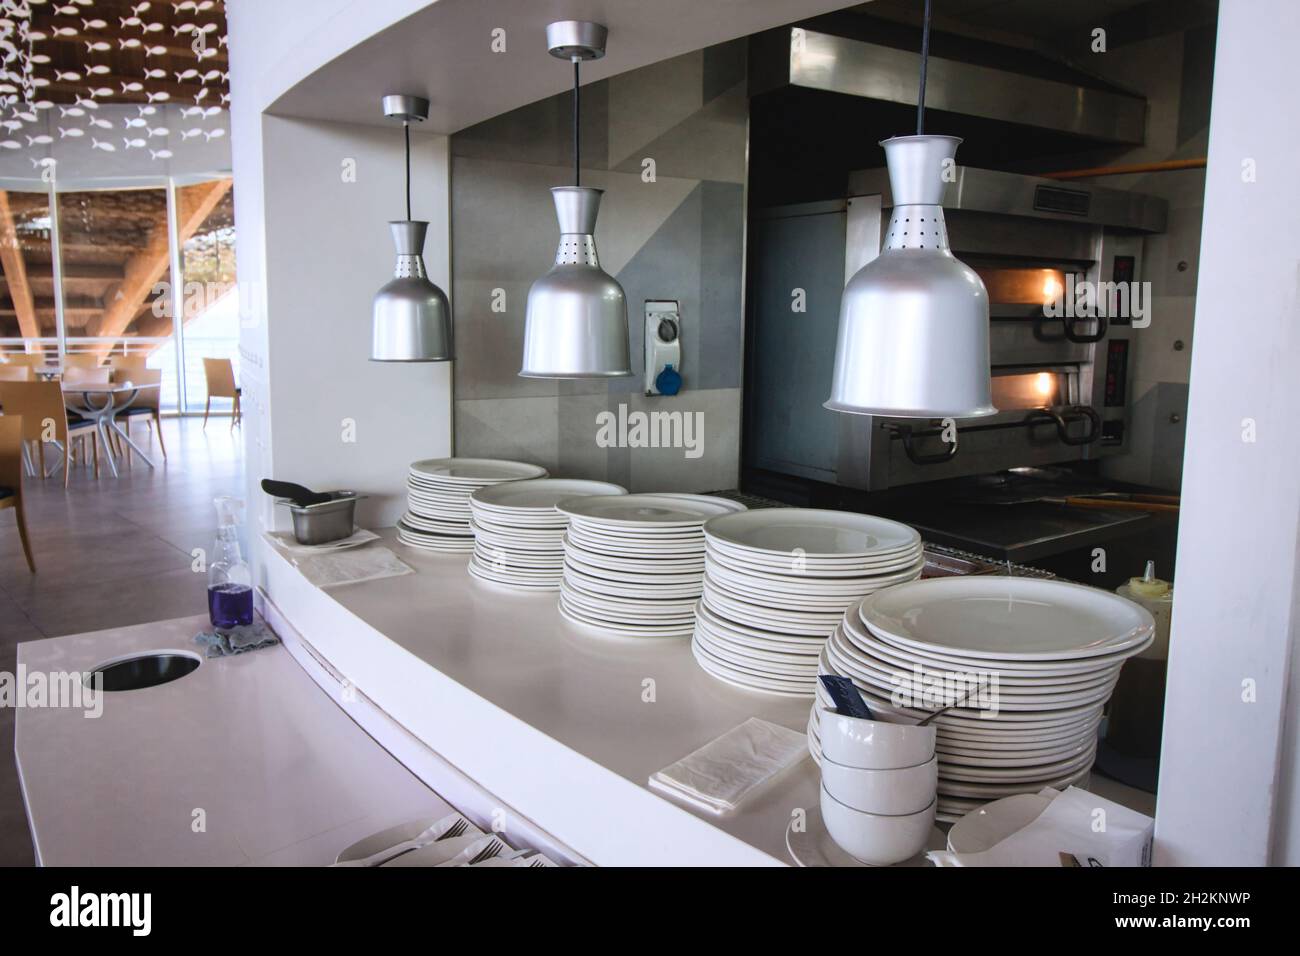 Küche mit Durchreiche in einem modernen Design-Restaurant Stockfotografie -  Alamy